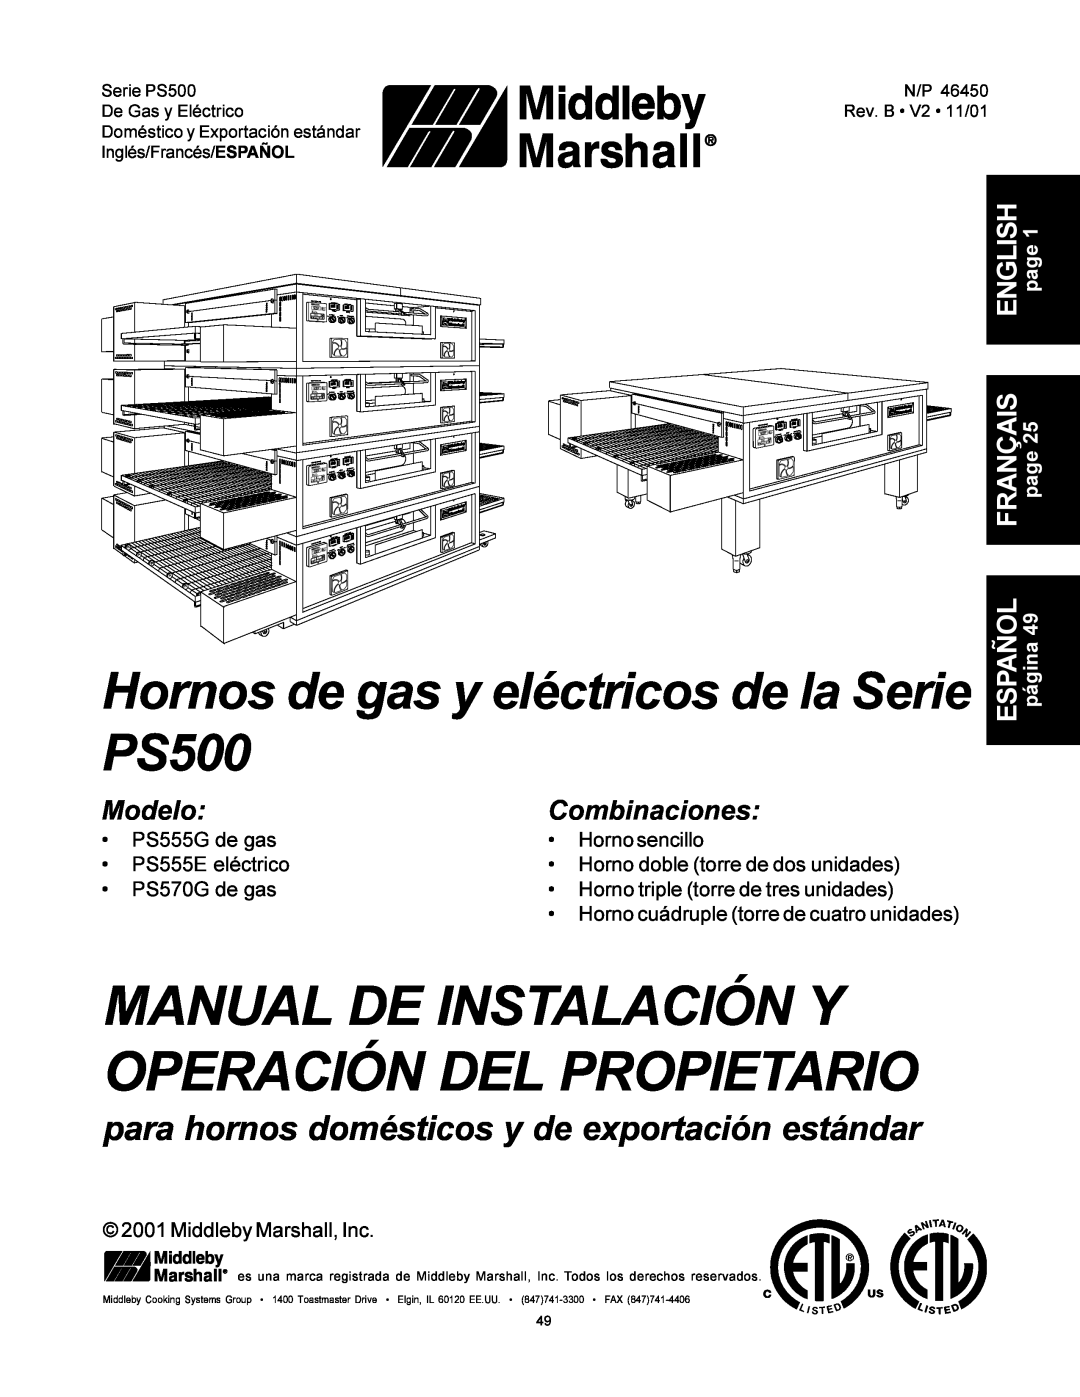 Middleby Marshall PS500 Manual De Instalación Y Operación Del Propietario, ModeloCombinaciones, PS555G de gas 